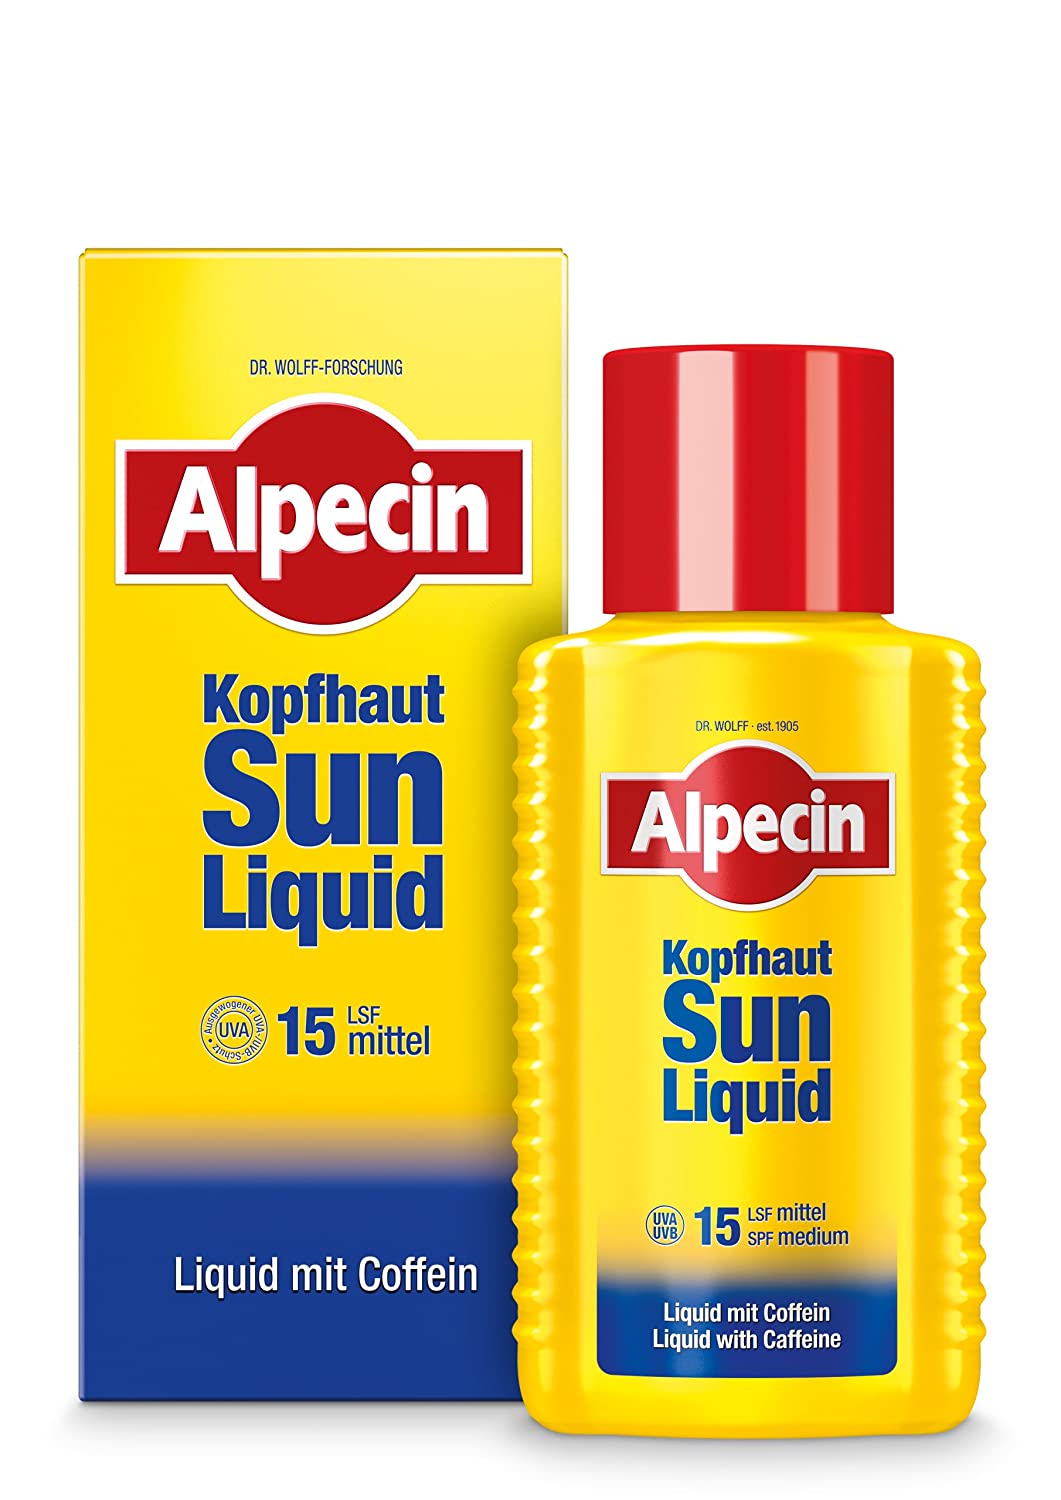 Alpecin Scalp Sun Liquid 1 x 190 ml - Sun Protection for the Scalp with SPF 15